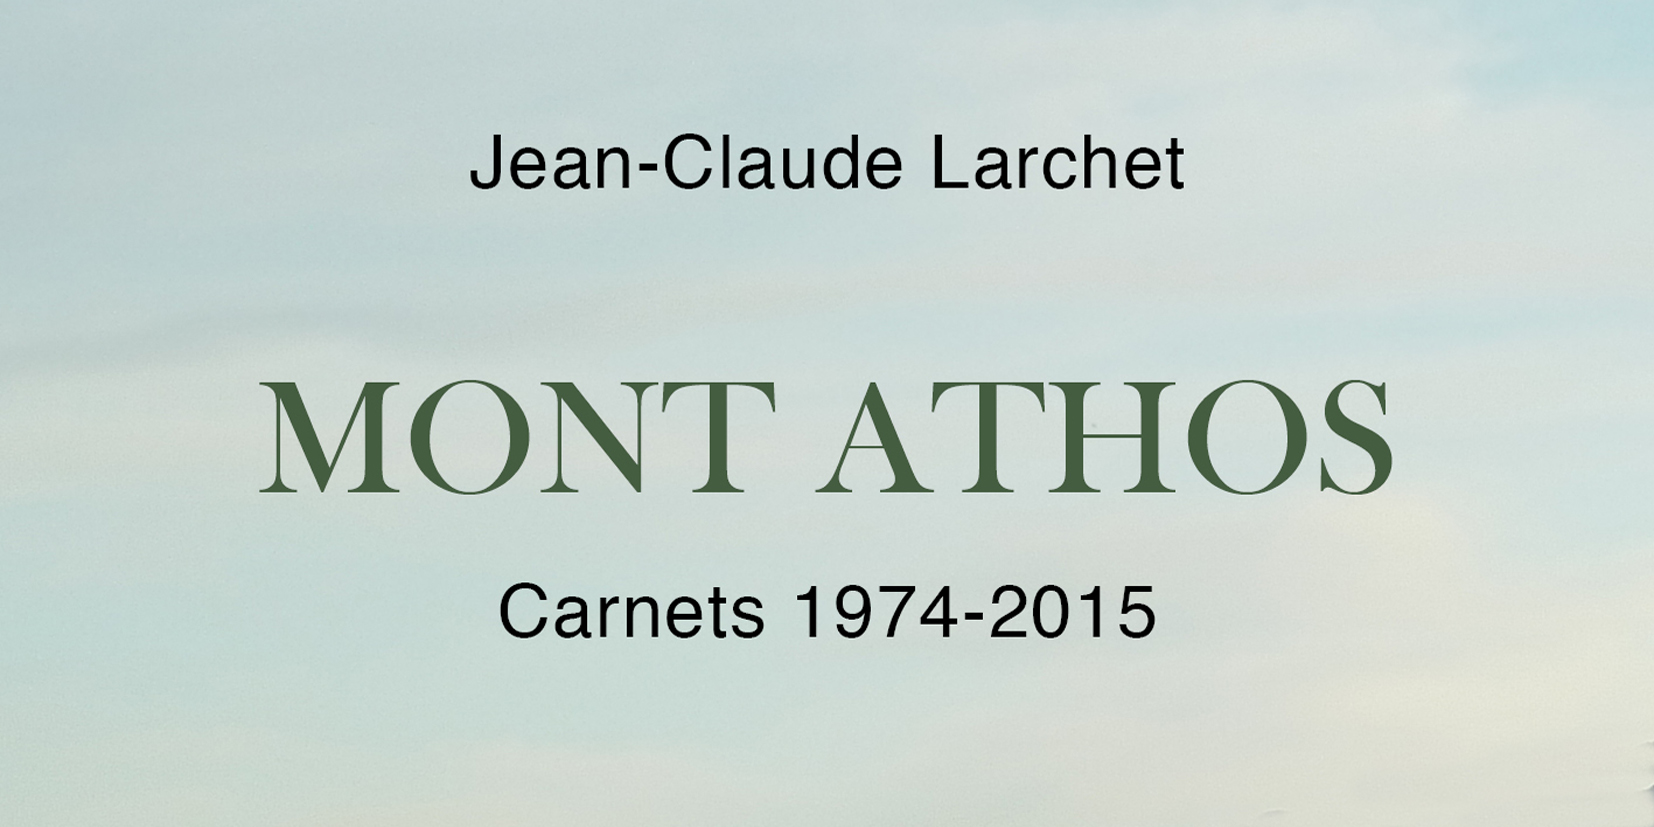 L’émission de télévision “L’orthodoxie, ici et maintenant” (KTO) d’avril avec Jean-Claude Larchet sur le Mont Athos